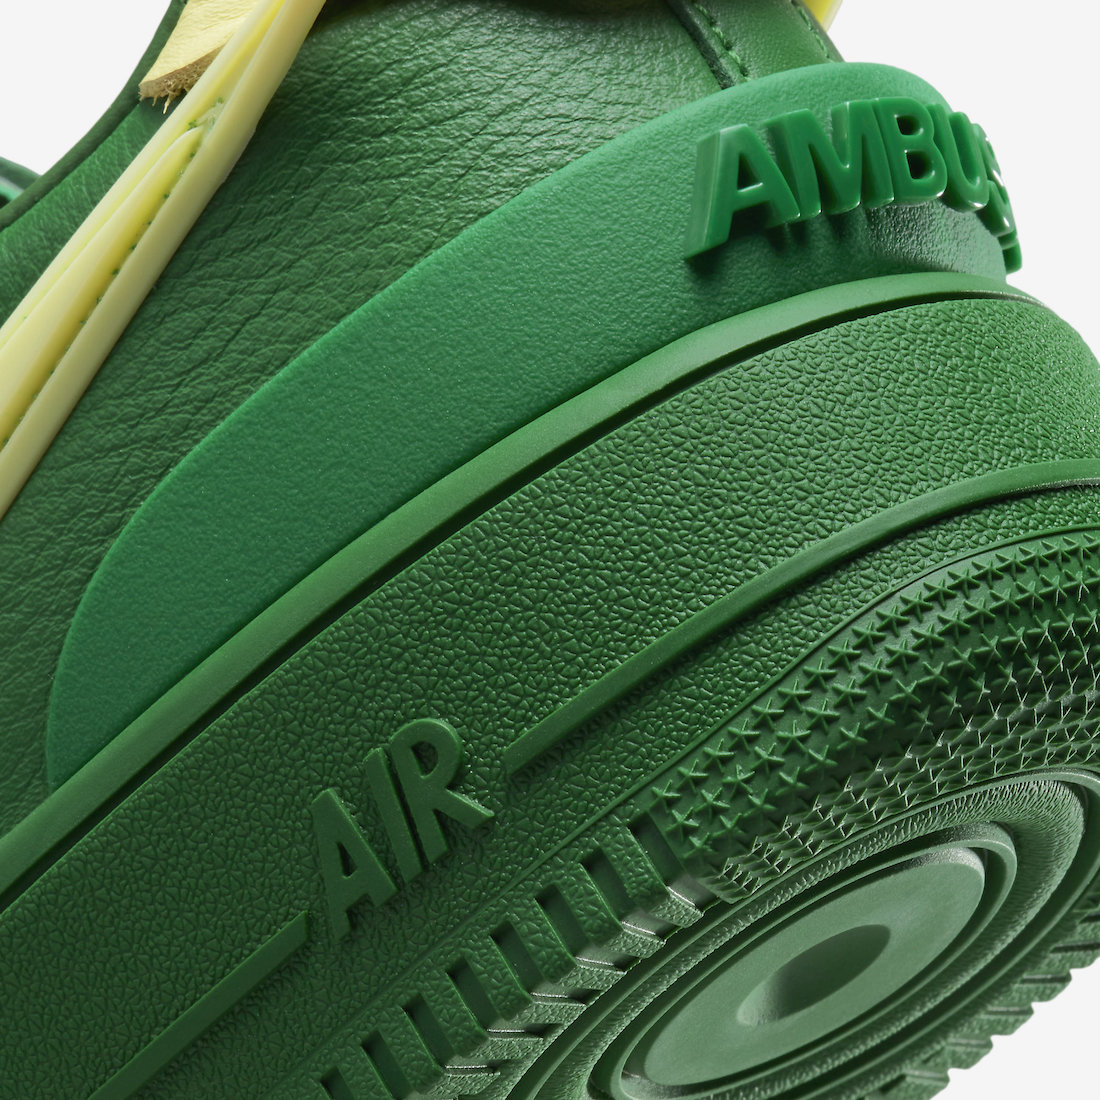 AMBUSH friday Nike Air Force 1 Green DV3464 300 Release Date 7